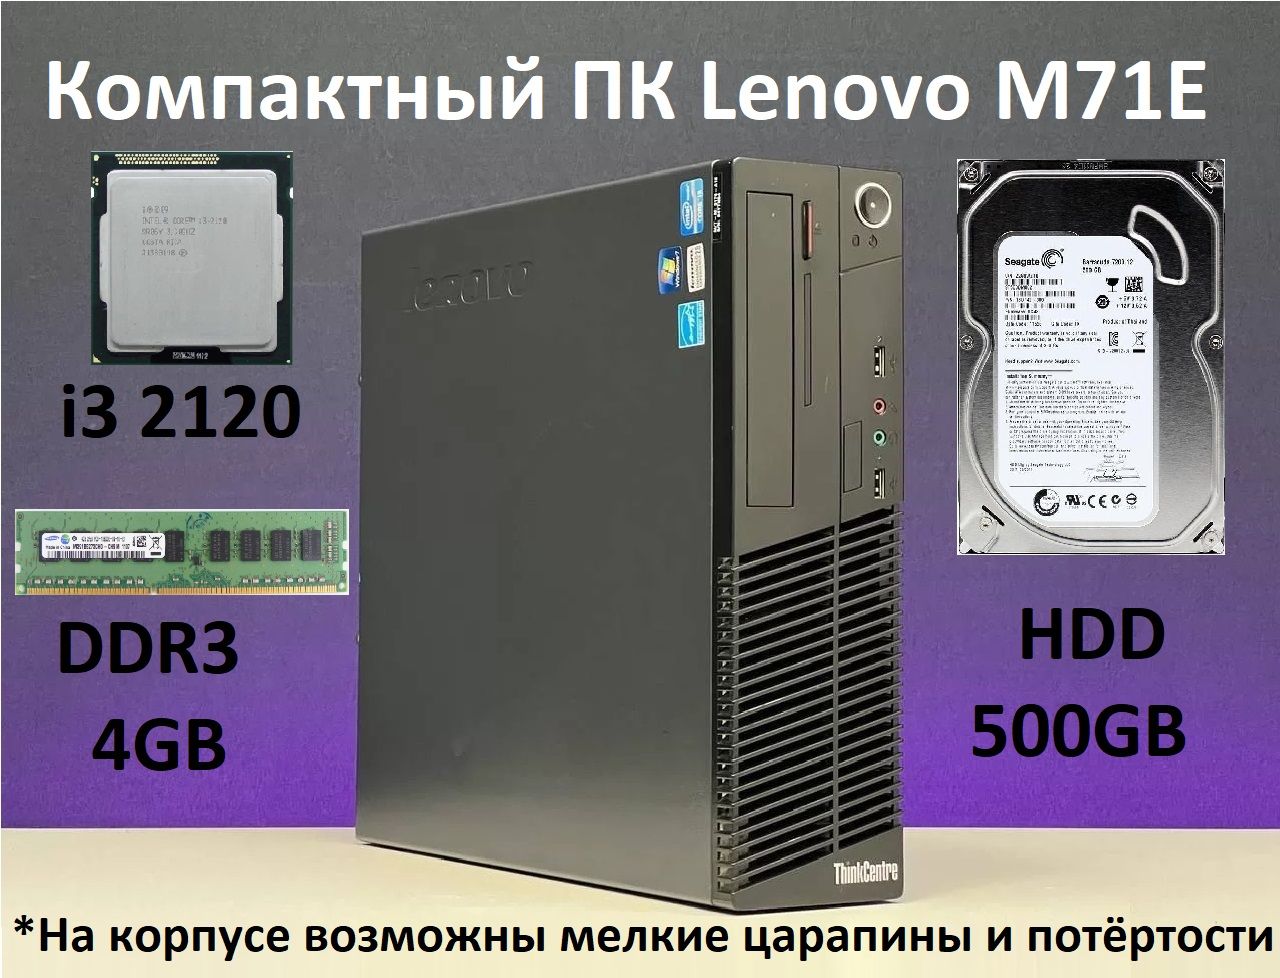 LenovoСистемныйблокКомпактныйПКM71Eintelcorei32120/4GB/500GBHDD(IntelCorei3-2120,RAM4ГБ,SSD500ГБ,IntelHDGraphics2000,),черный